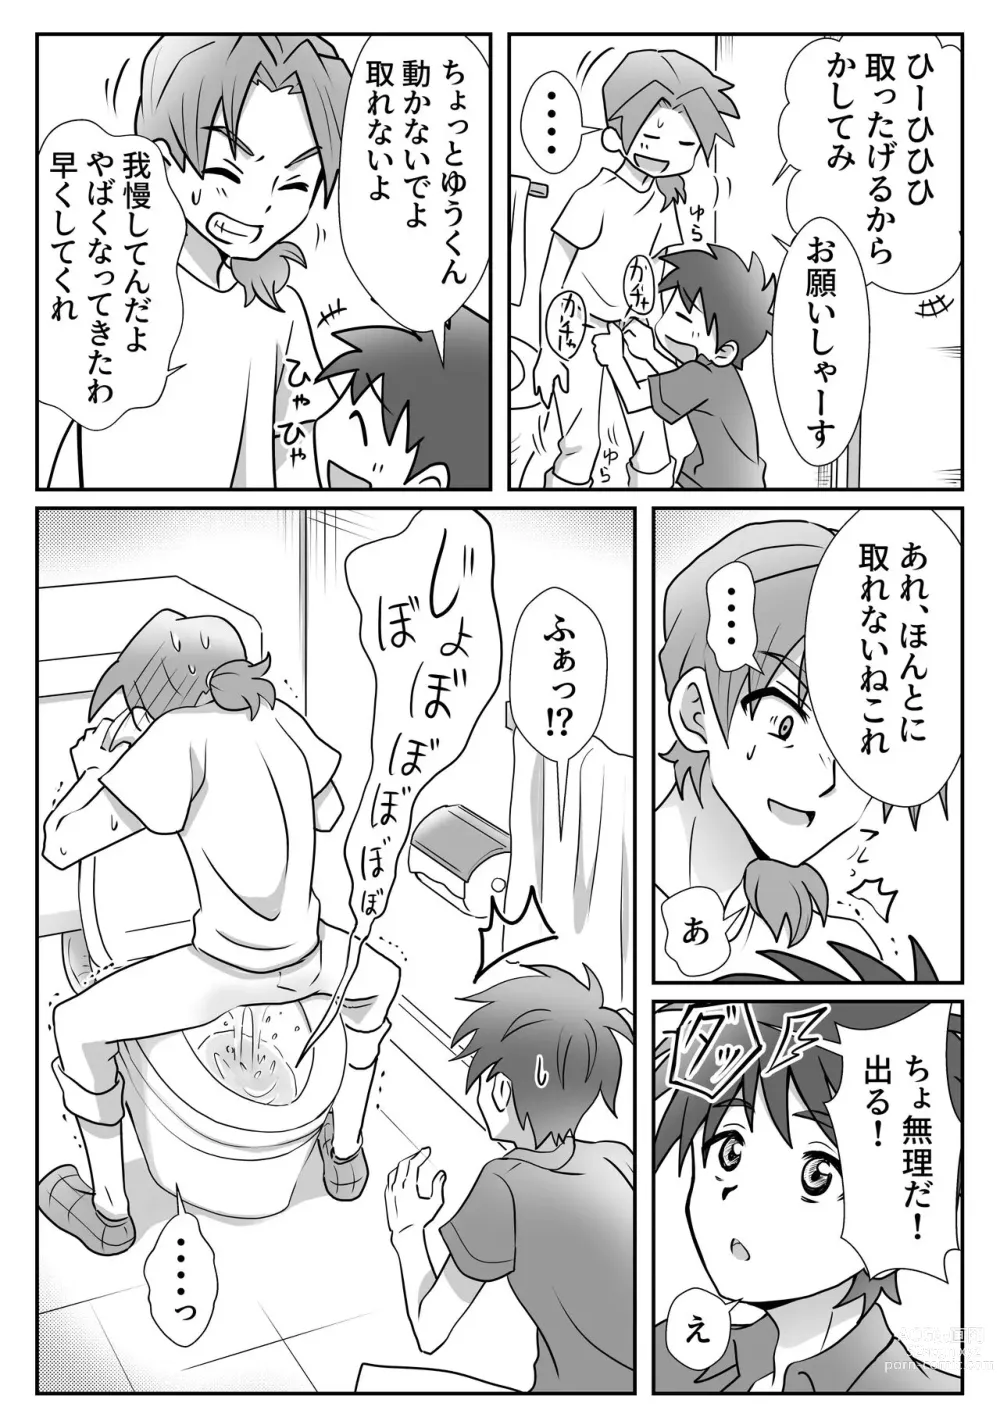 Page 9 of doujinshi Yuu-kun to Kyousuke